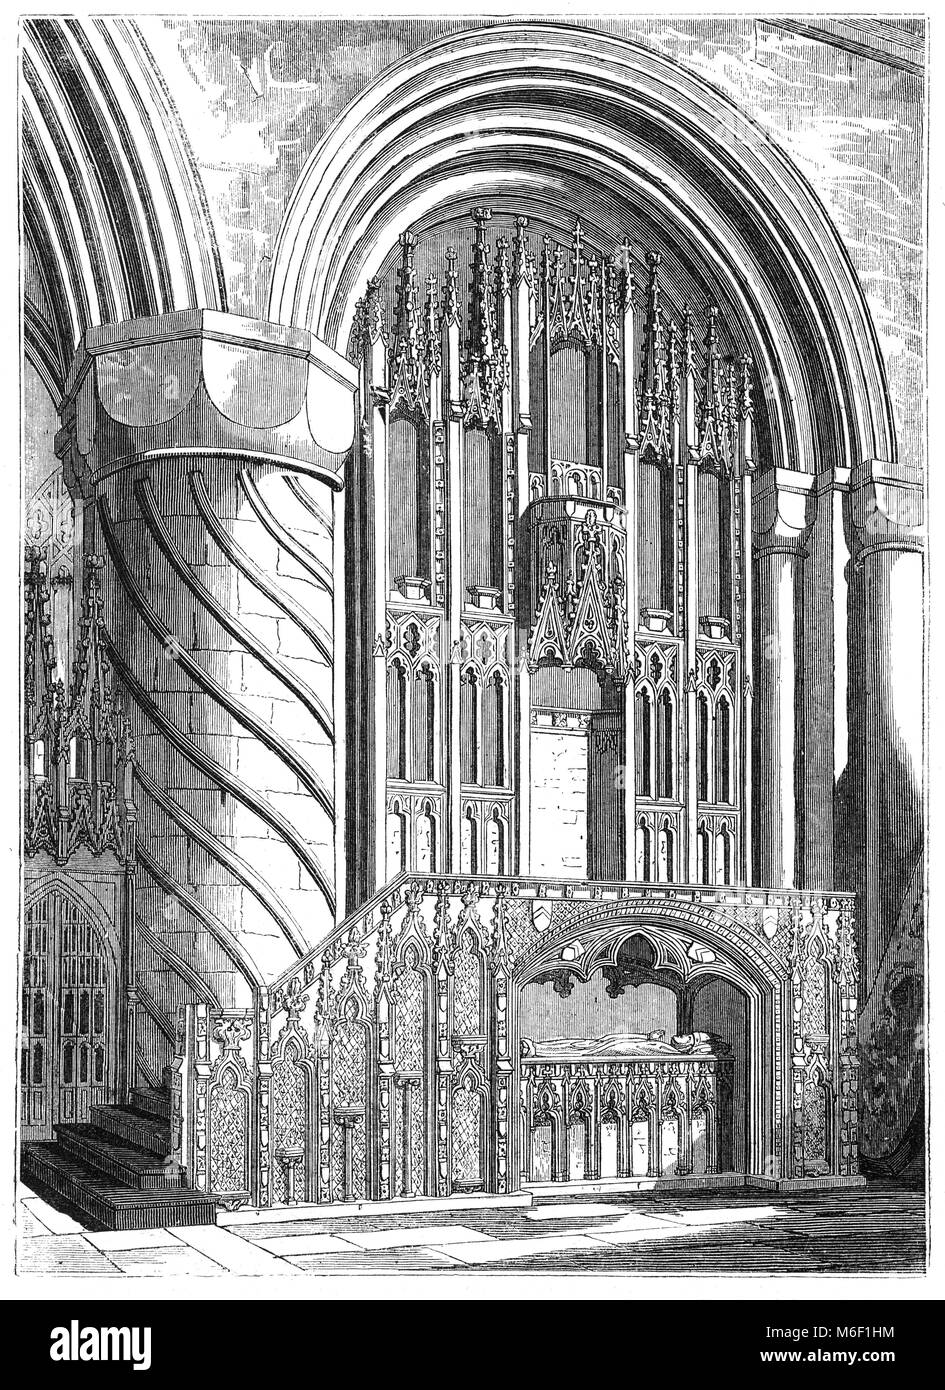 Des Bischofs Thron in der Normannischen Romanik Durham Cathedral, der Heimat der Schrein von St. Cuthbert. Die heutige Kathedrale in der Stadt Durham, England, ersetzt im 10. Jahrhundert der "weißen Kirche', als Teil einer klösterlichen Stiftung der Schrein des Heiligen Cuthbert von Lindisfarne zu Haus gebaut. Stockfoto